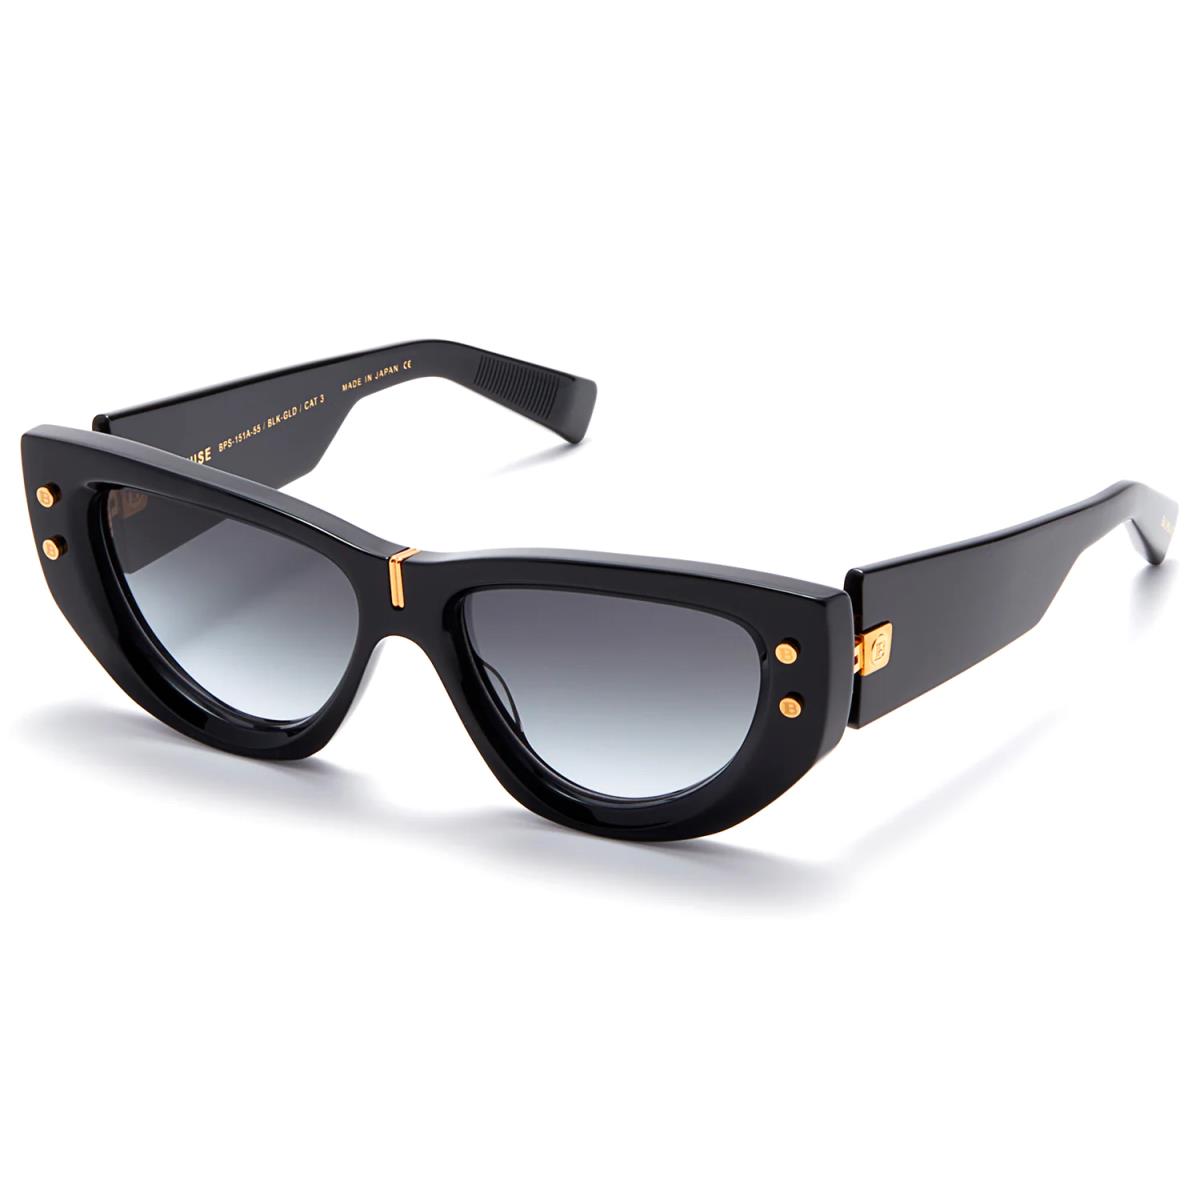 Balmain Sunglasses B-muse Black Designer Frames Gray Lens 55MM